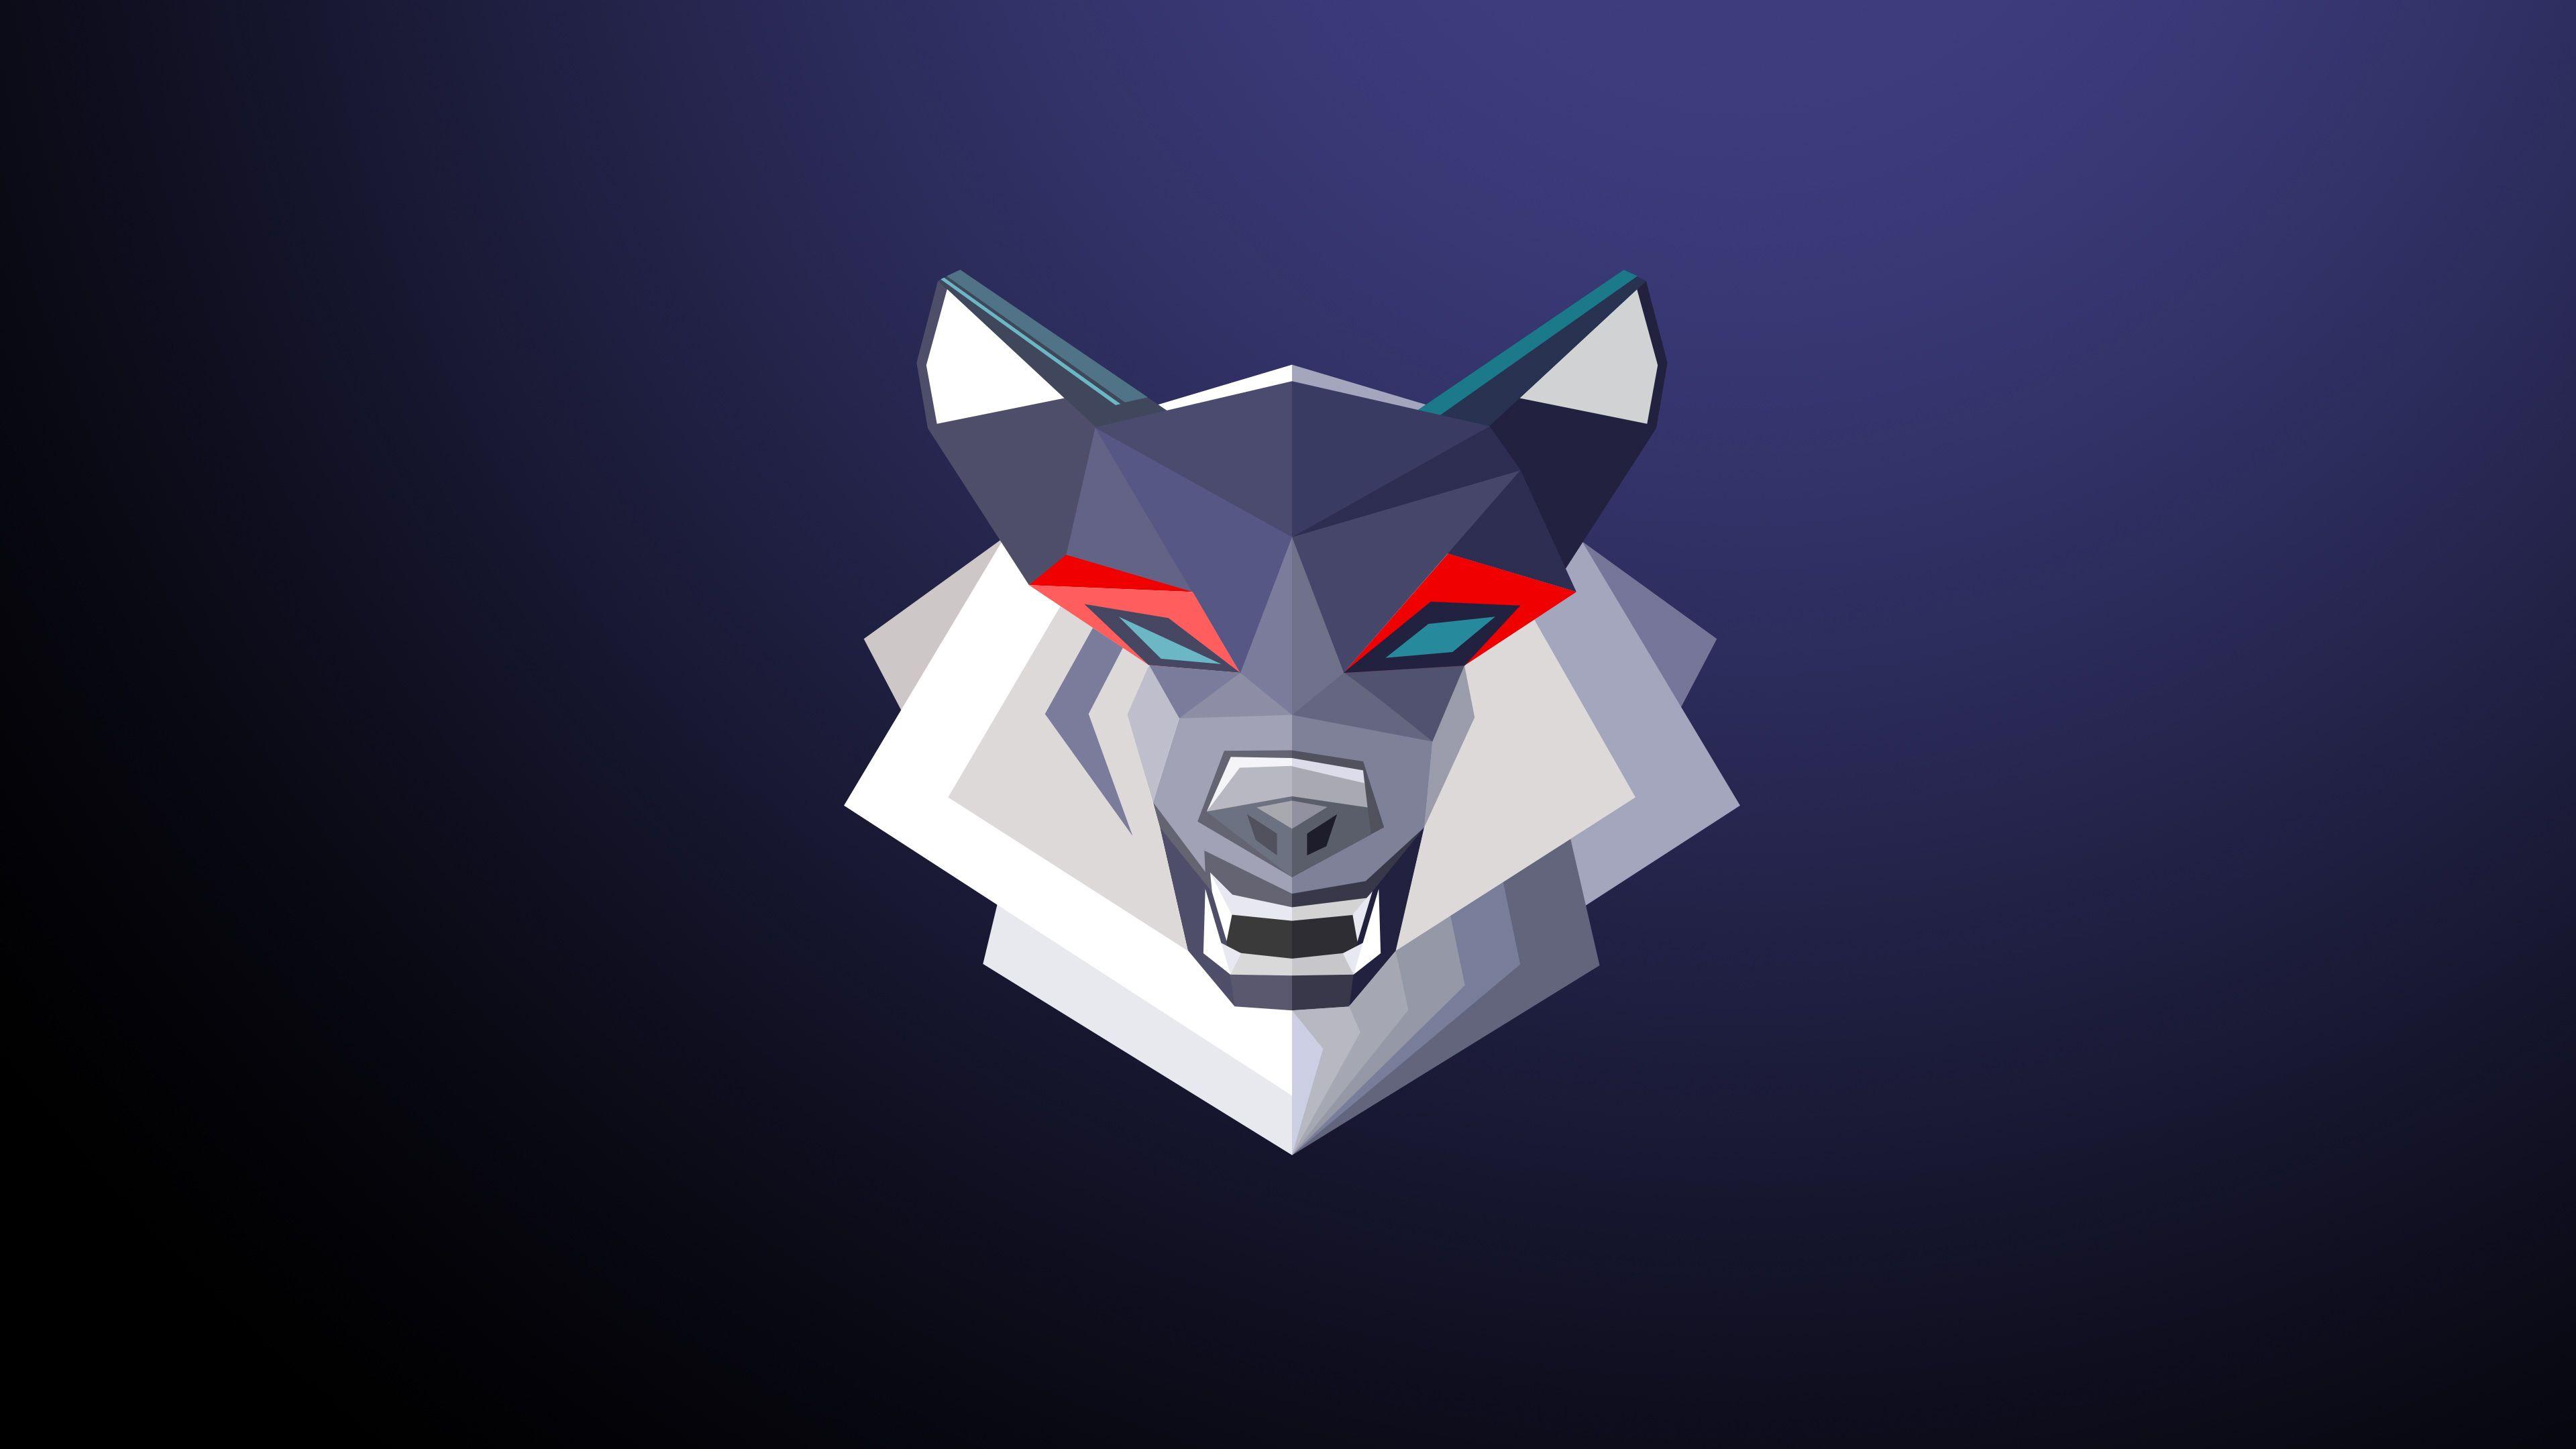 HD wolf logo wallpapers  Peakpx